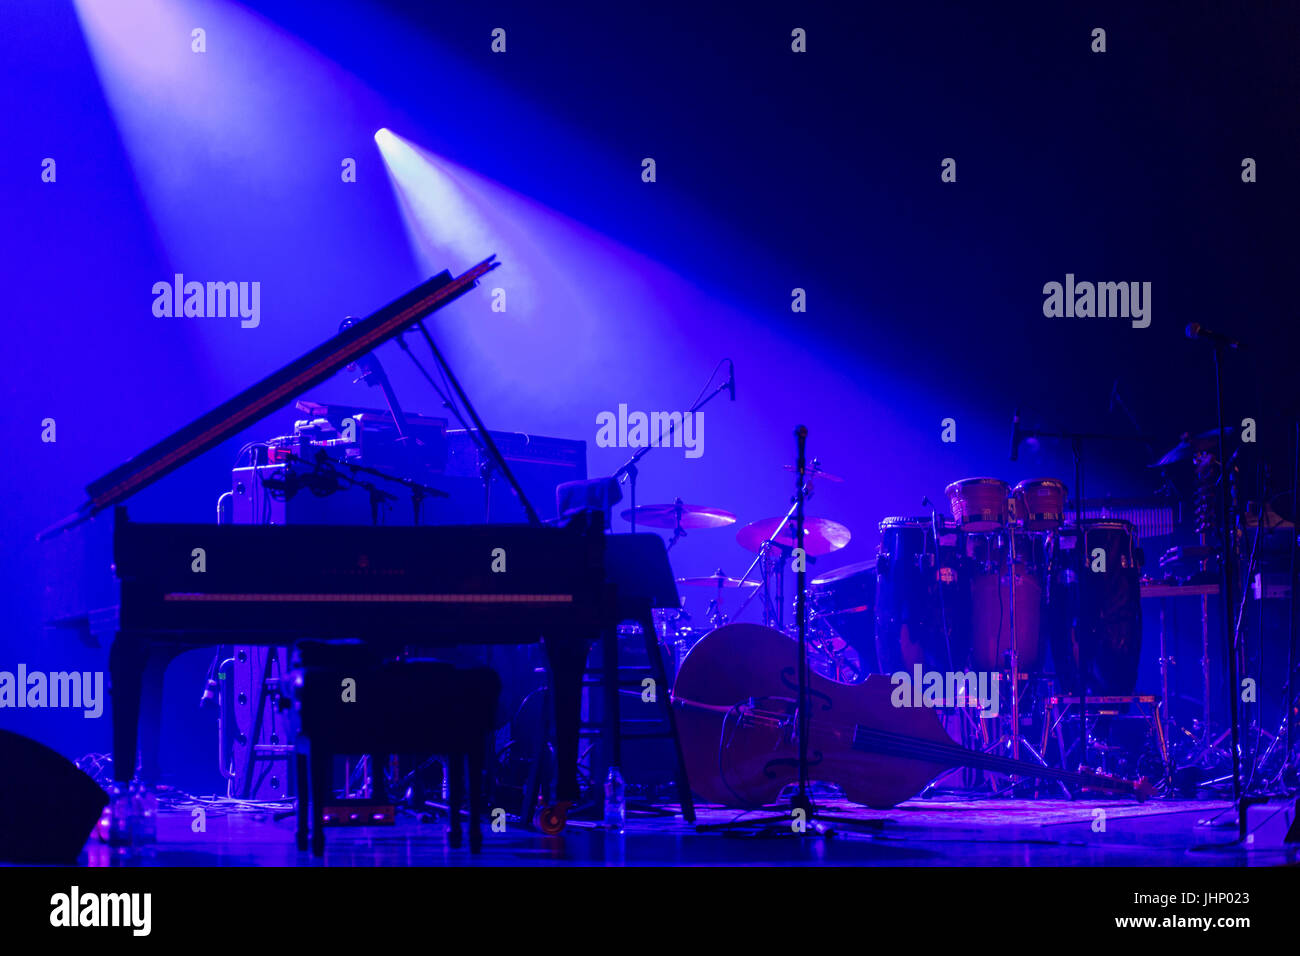 Strumenti musicali su un palco con una suggestiva illuminazione del palcoscenico Foto Stock